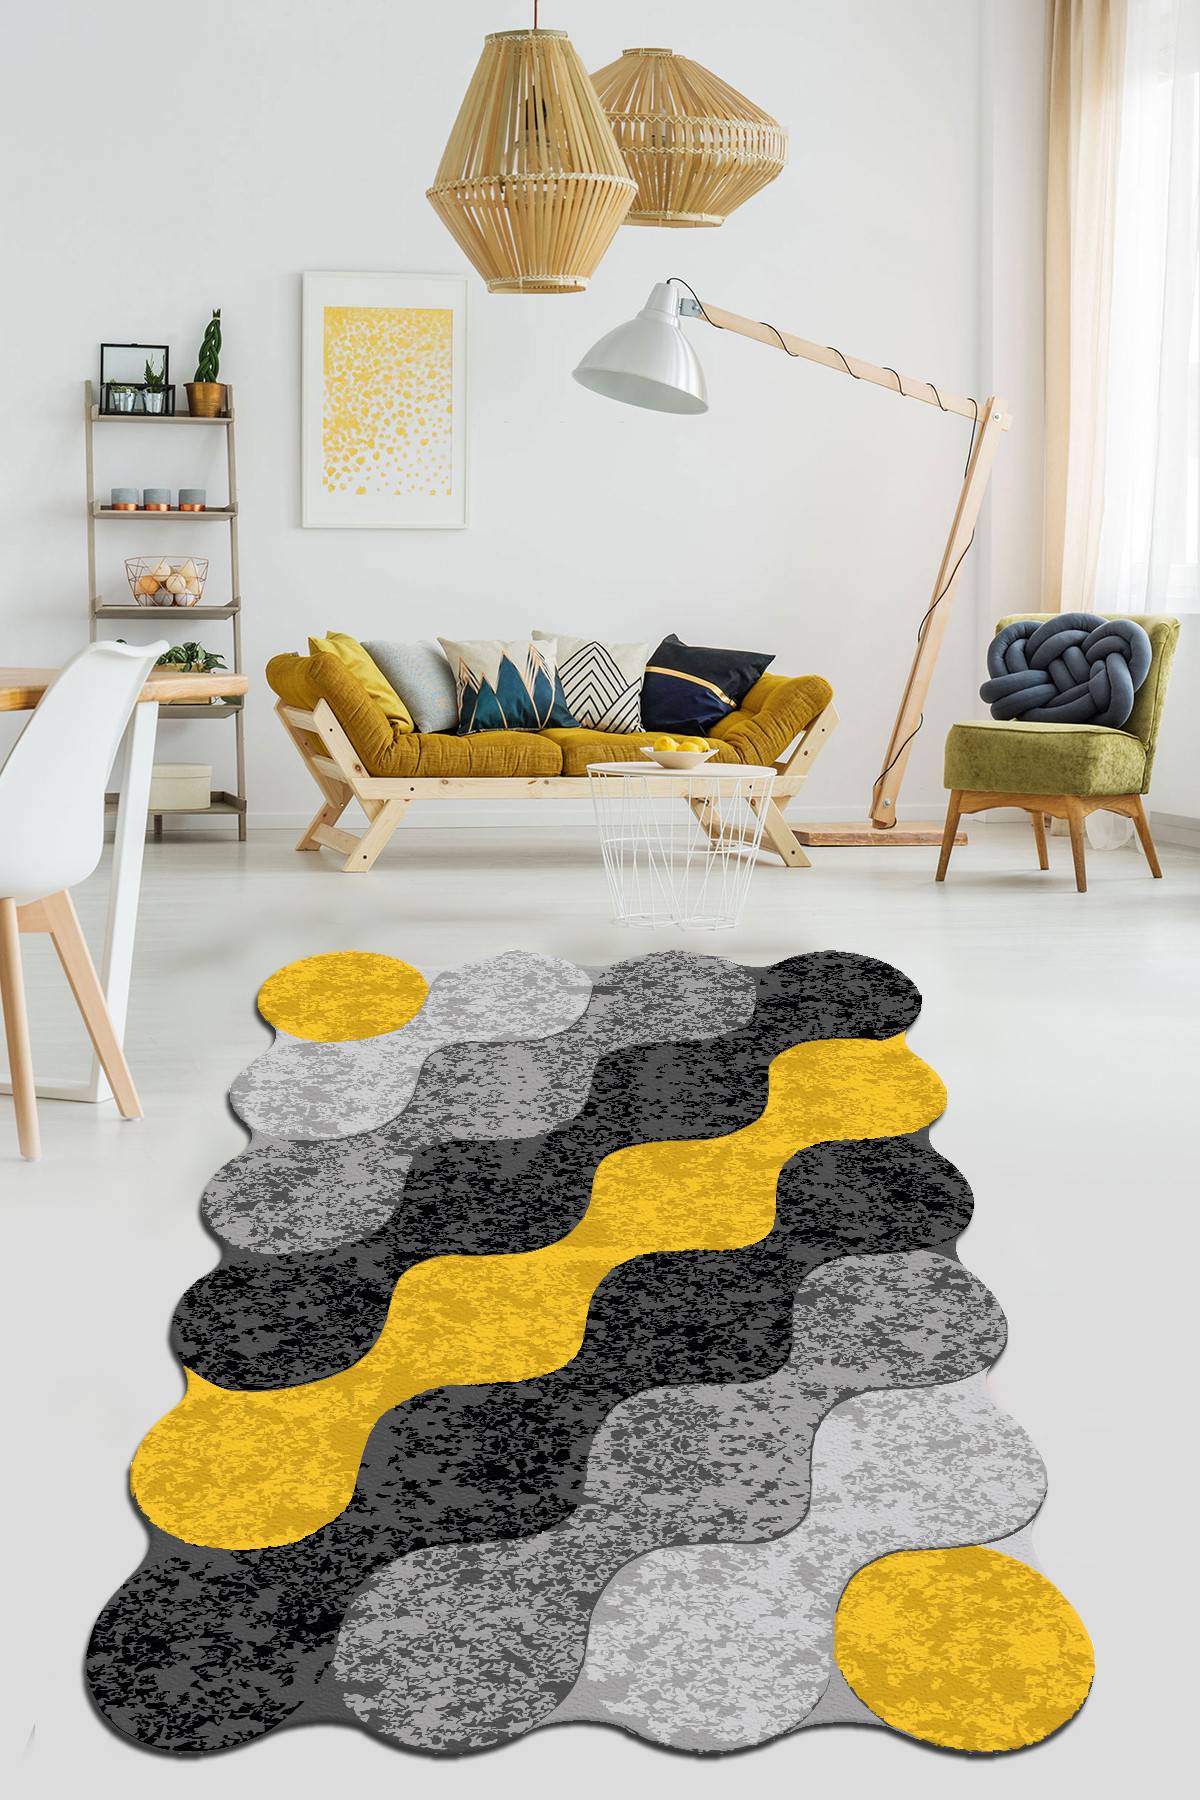 Ferano Teppich 80x100cm Velours Motiv Kreise kombiniert Gelb, Schwarz und Grau